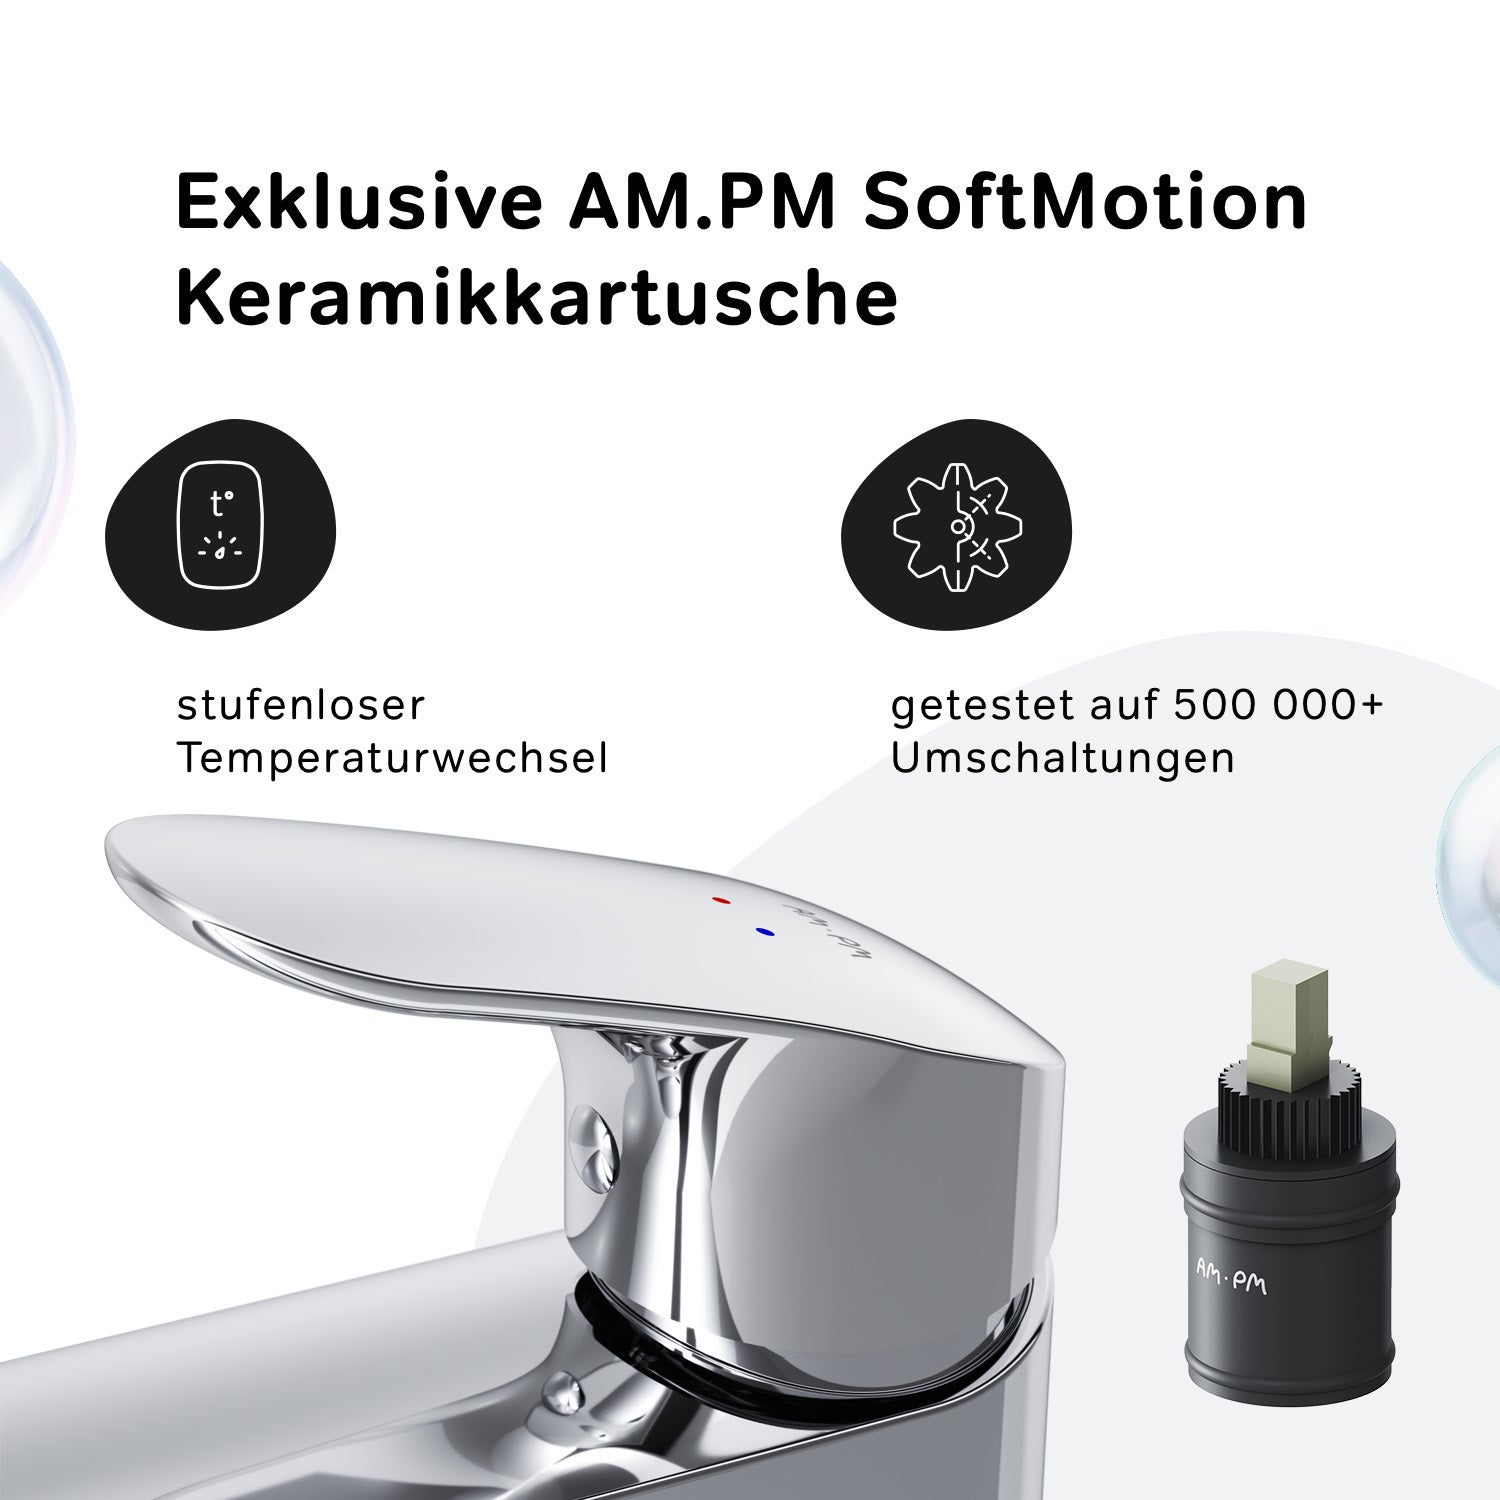 FLA92000 Like Einhebel-Waschtischarmatur mit hohem Auslauf | Online Store von AM.PM